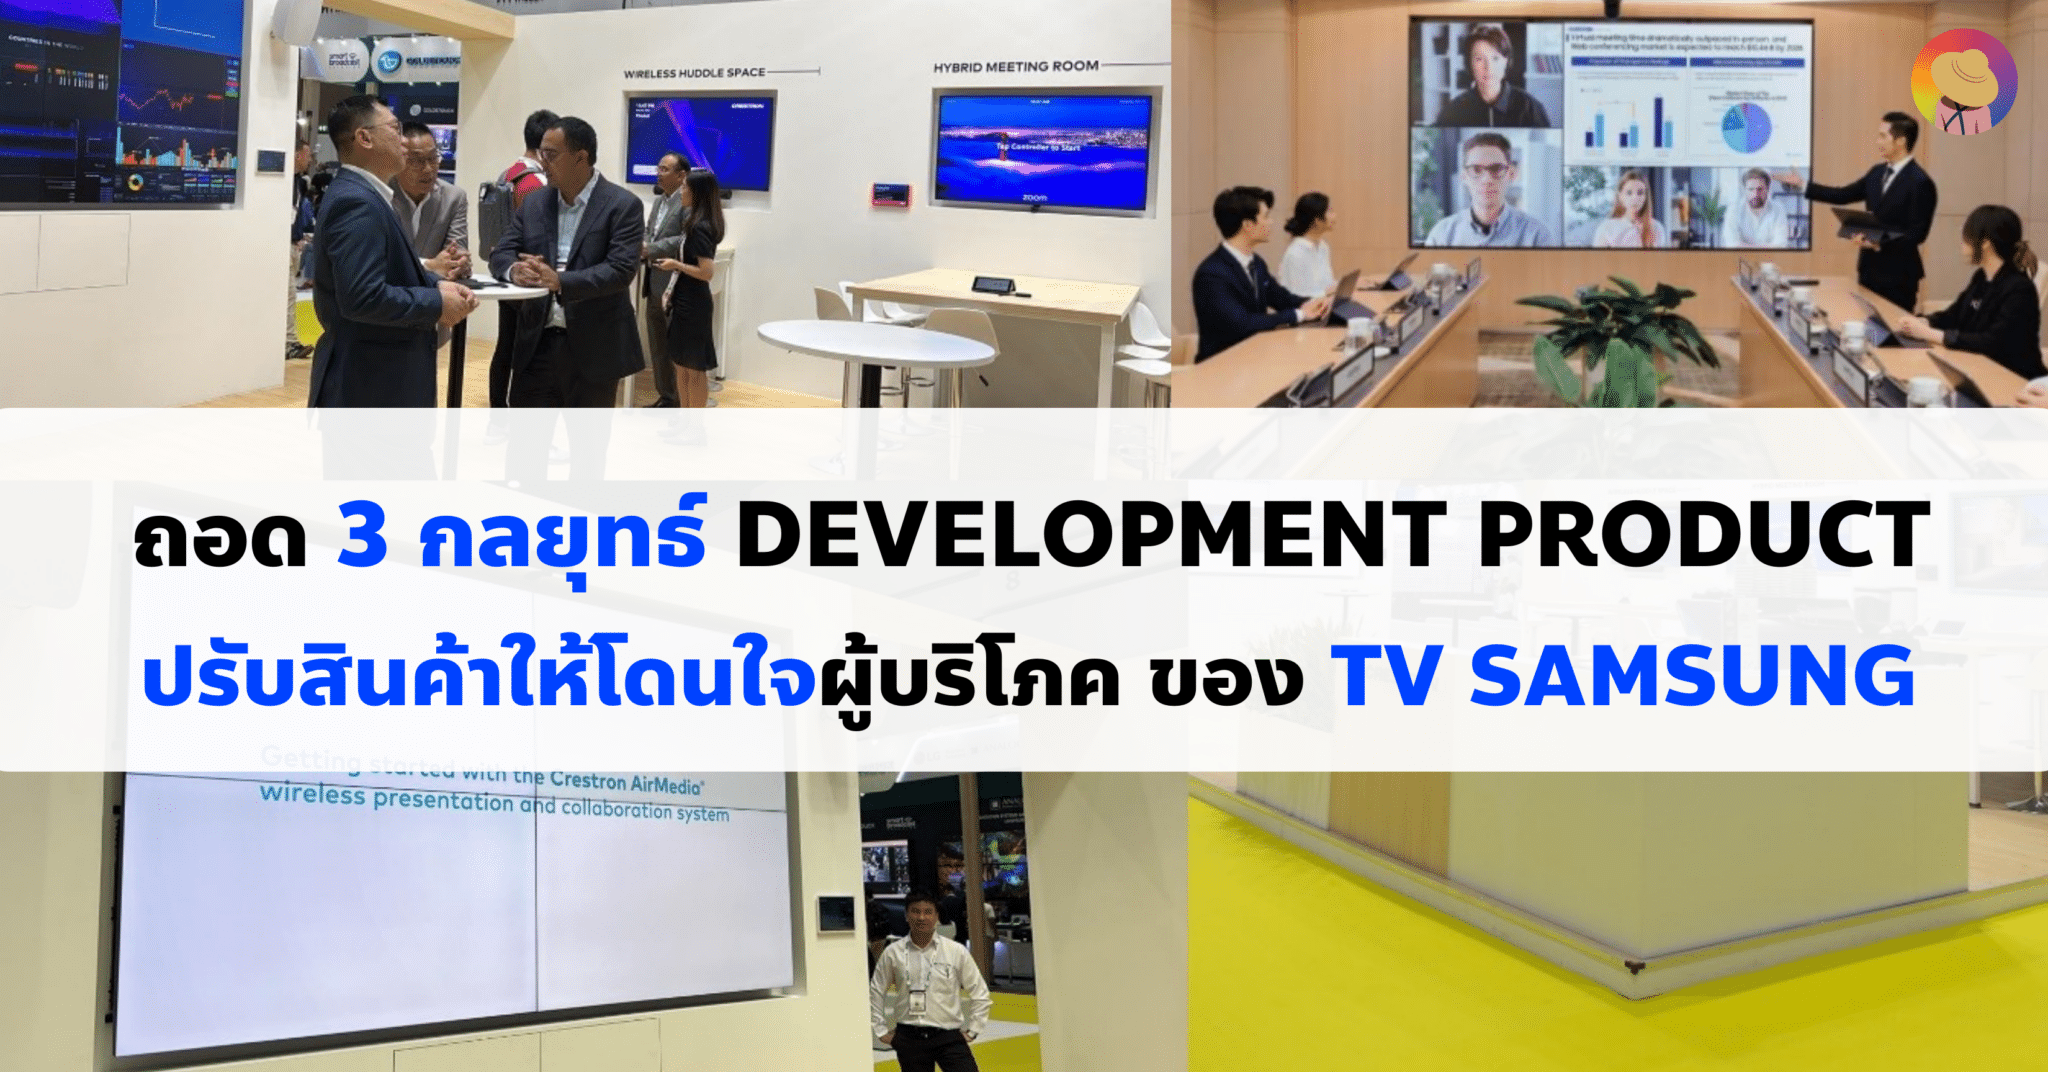 ถอด 3 กลยุทธ์ Development Product ปรับสินค้าให้โดนใจผู้บริโภค ของ Samsung TV